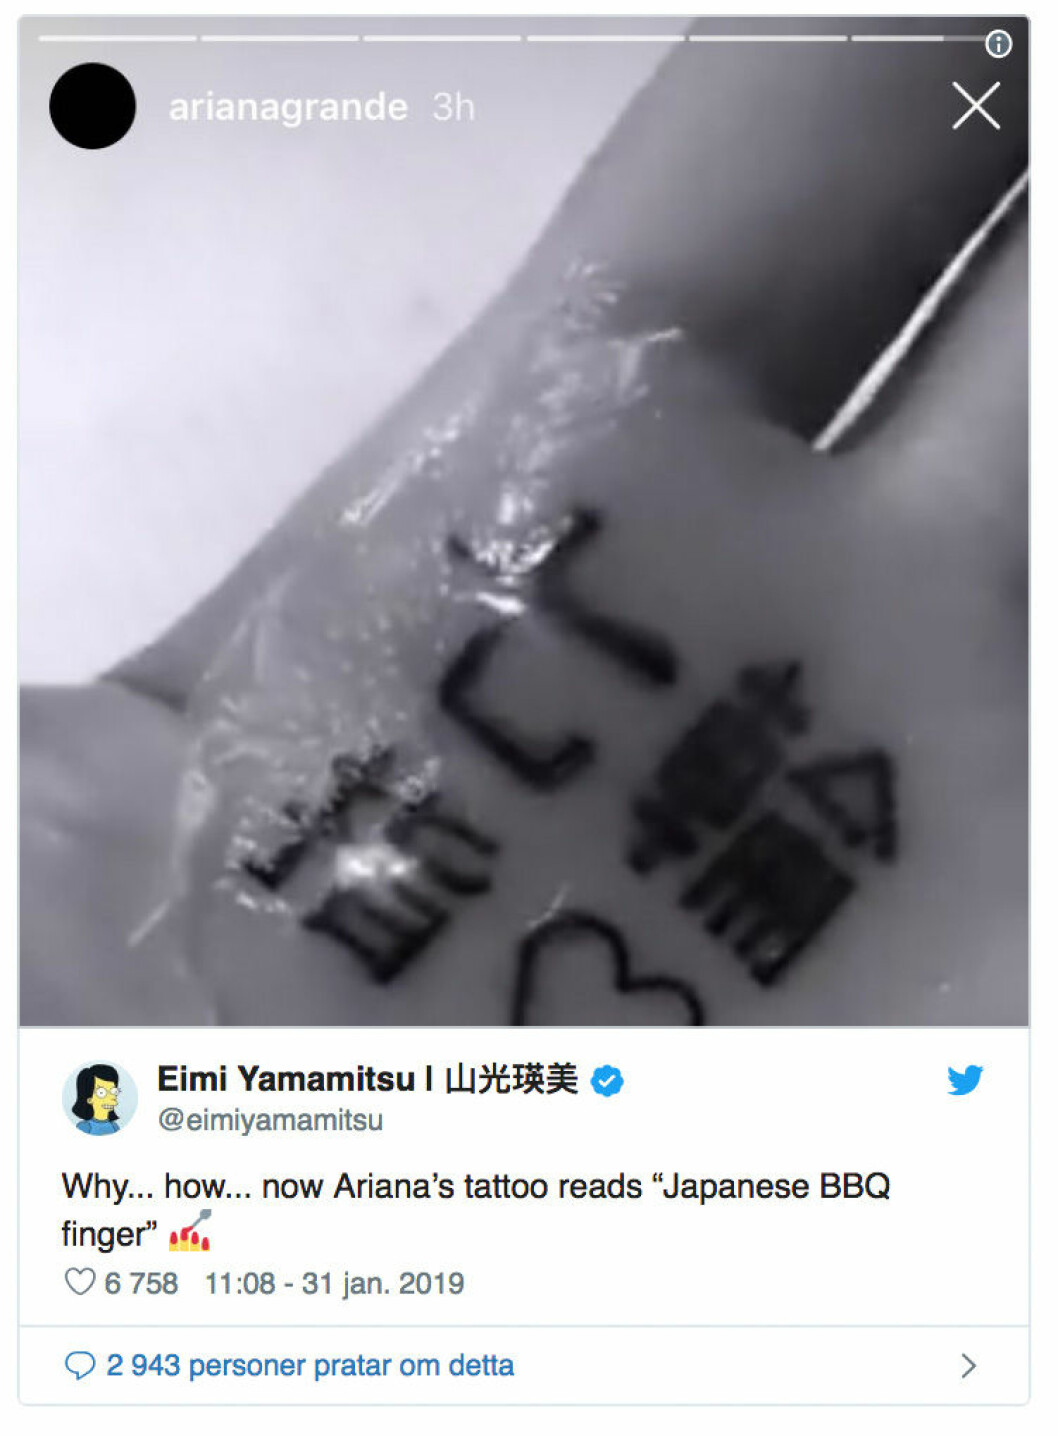 Ariana grandes tatuering blev fel igen